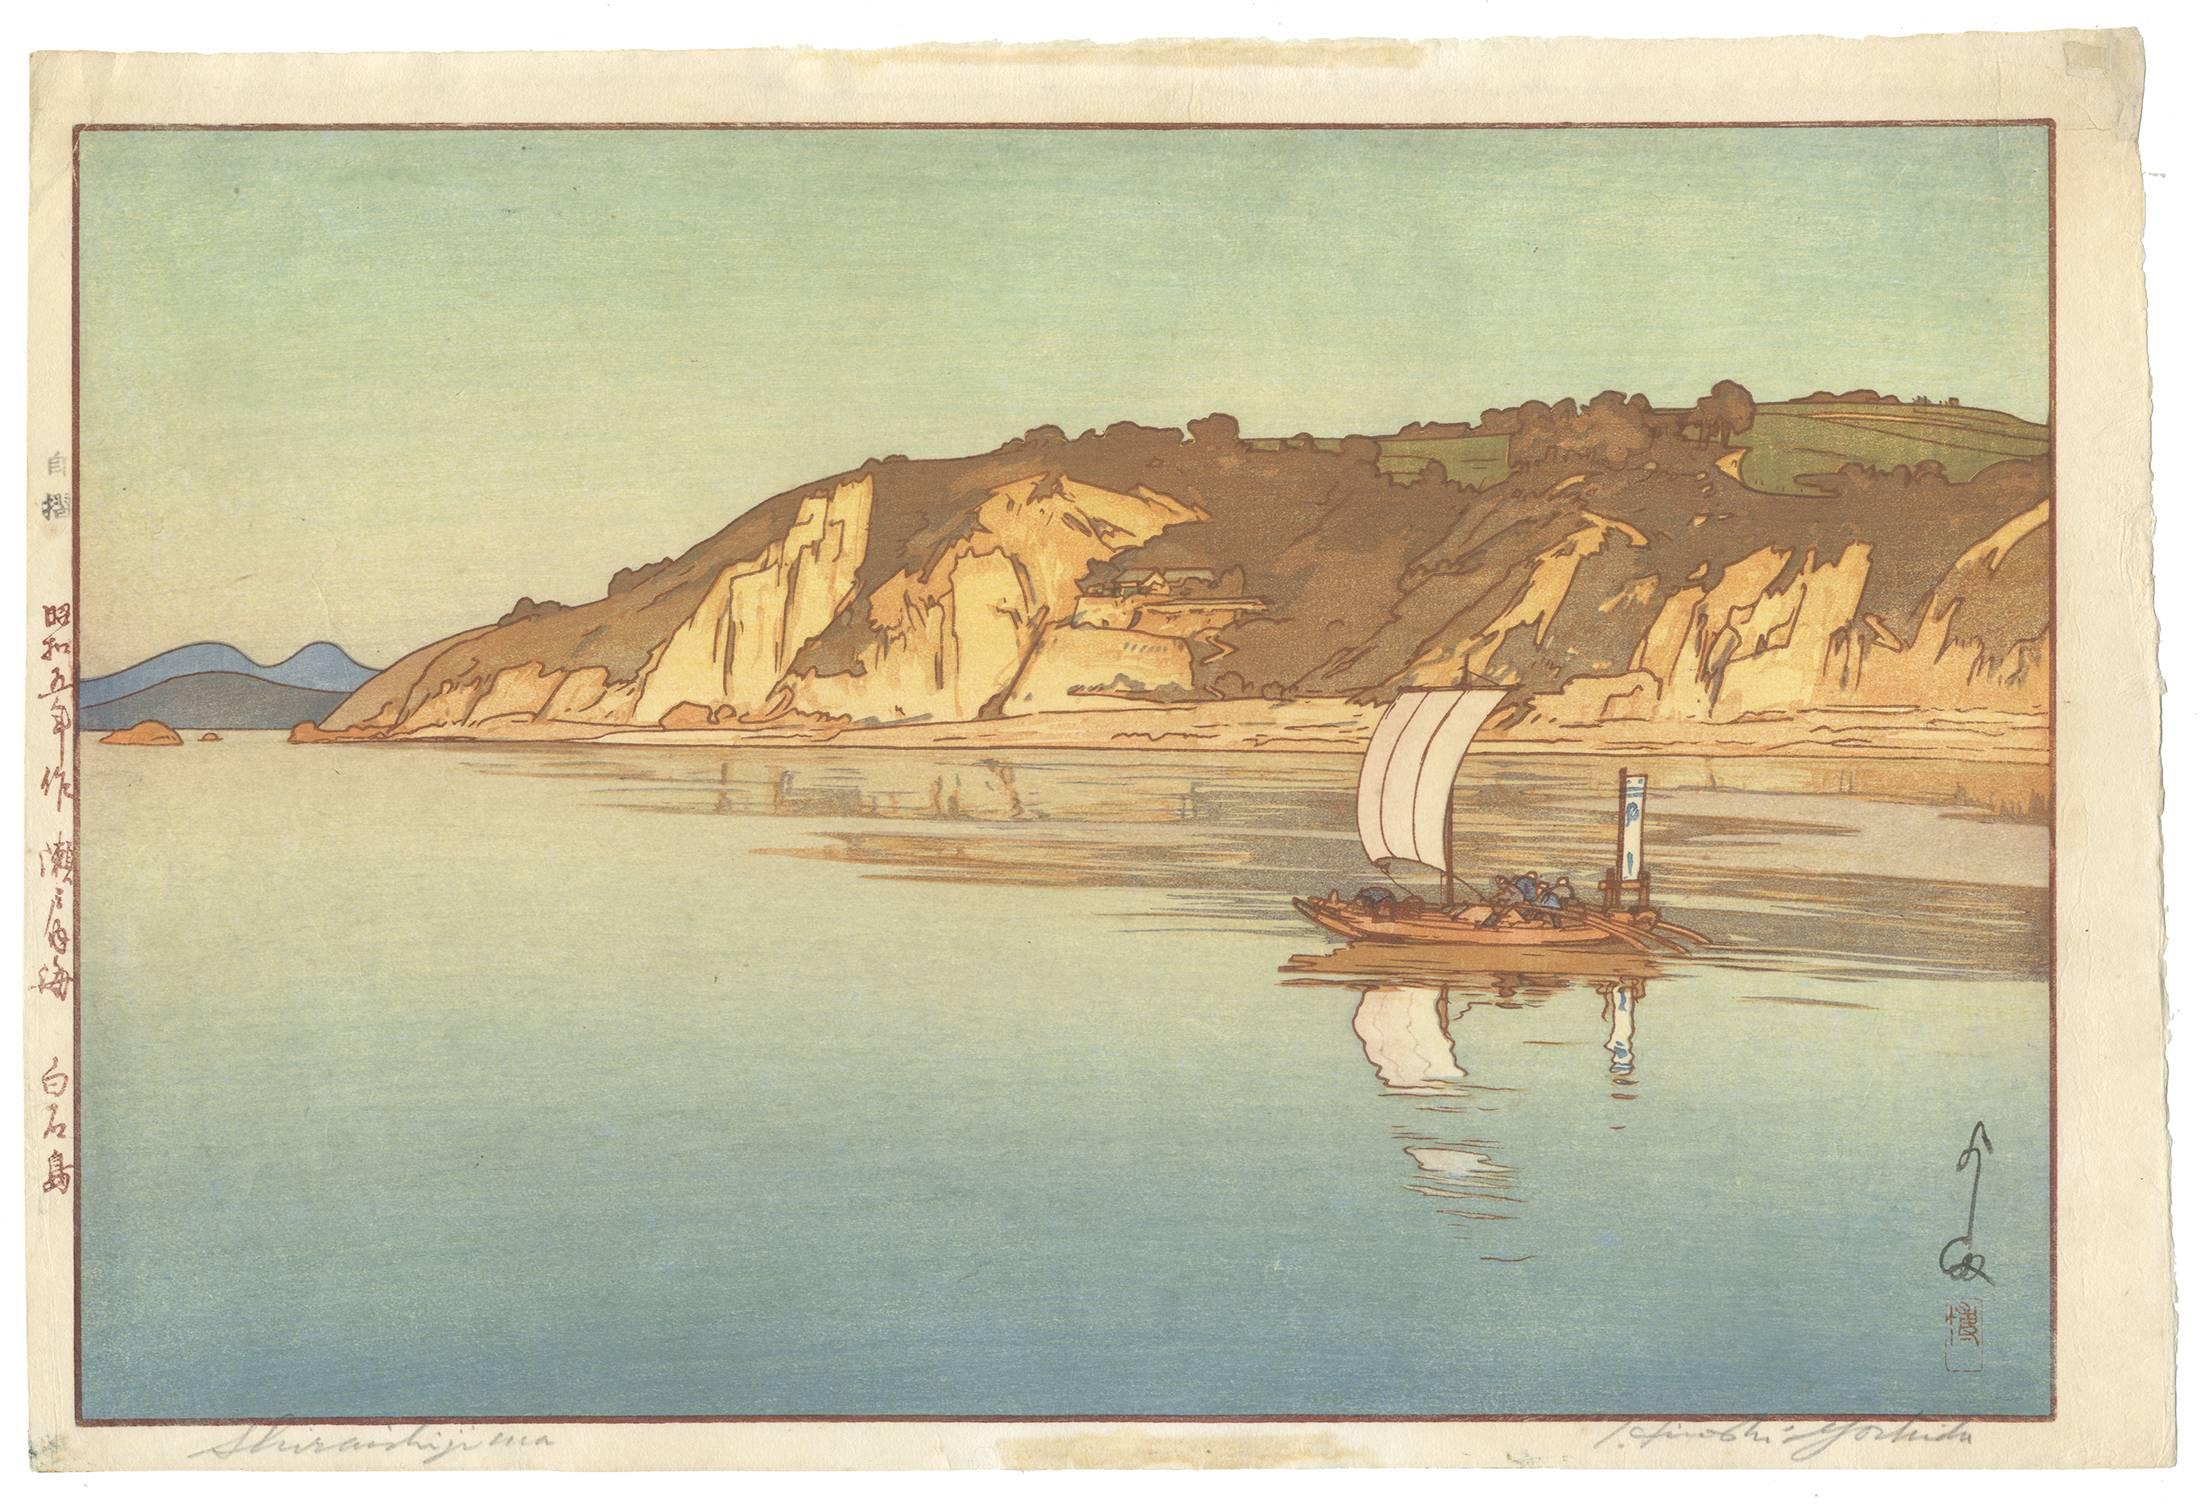 Hiroshi Yoshida (1876-1950)
Titel: Insel Shiraishi
Serie: Binnenmeer
Datum: 1930
Abmessungen: 40,7 x 27,2 cm
Zustand: Kleberückstände von früherer Montage auf Vorder- und Rückseite. Die obere rechte Ecke wurde restauriert. 
Original